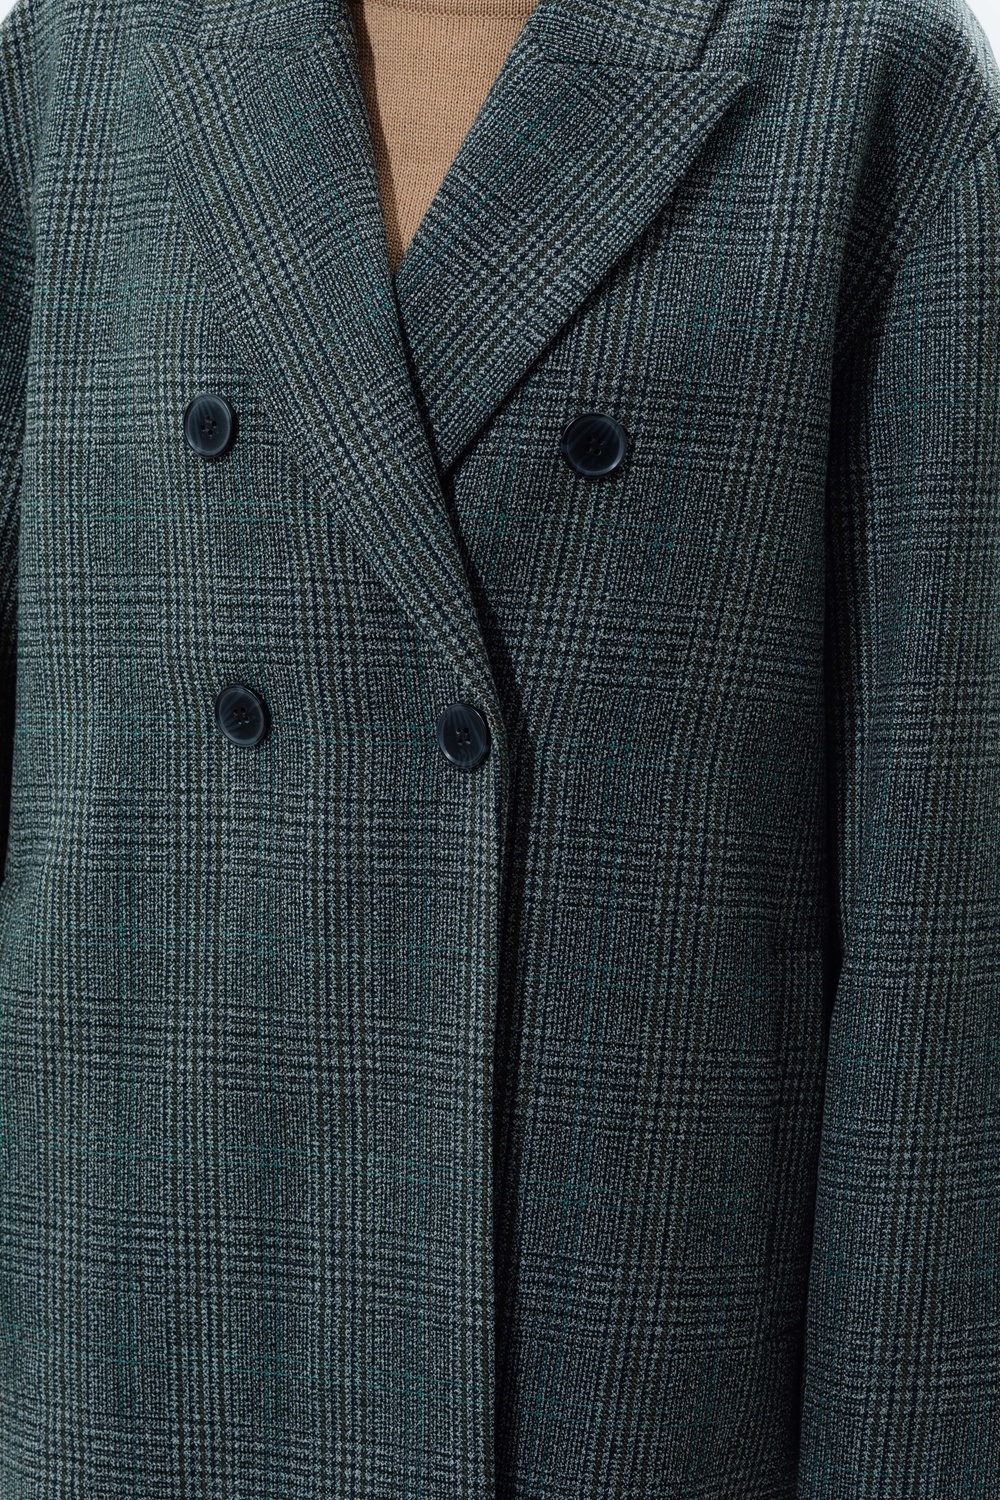 Пальто-жакет в мужском стиле из тонкой шерсти серо-зеленая клетка 093_gray_green_check фото